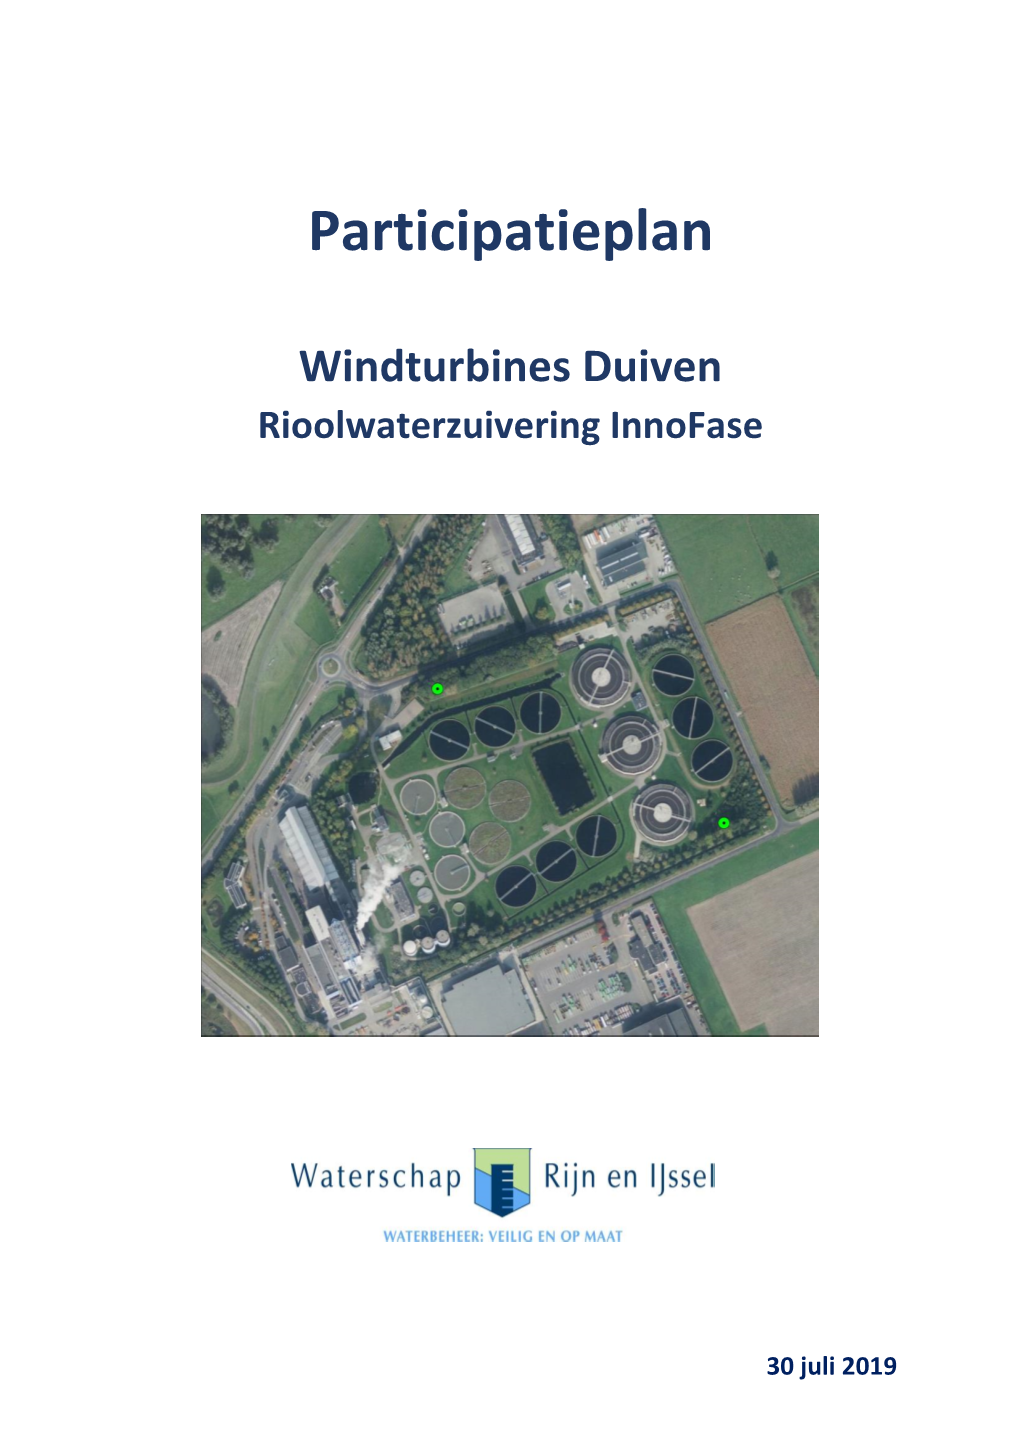 Participatieplan Windpark Gemeente Duiven 2019